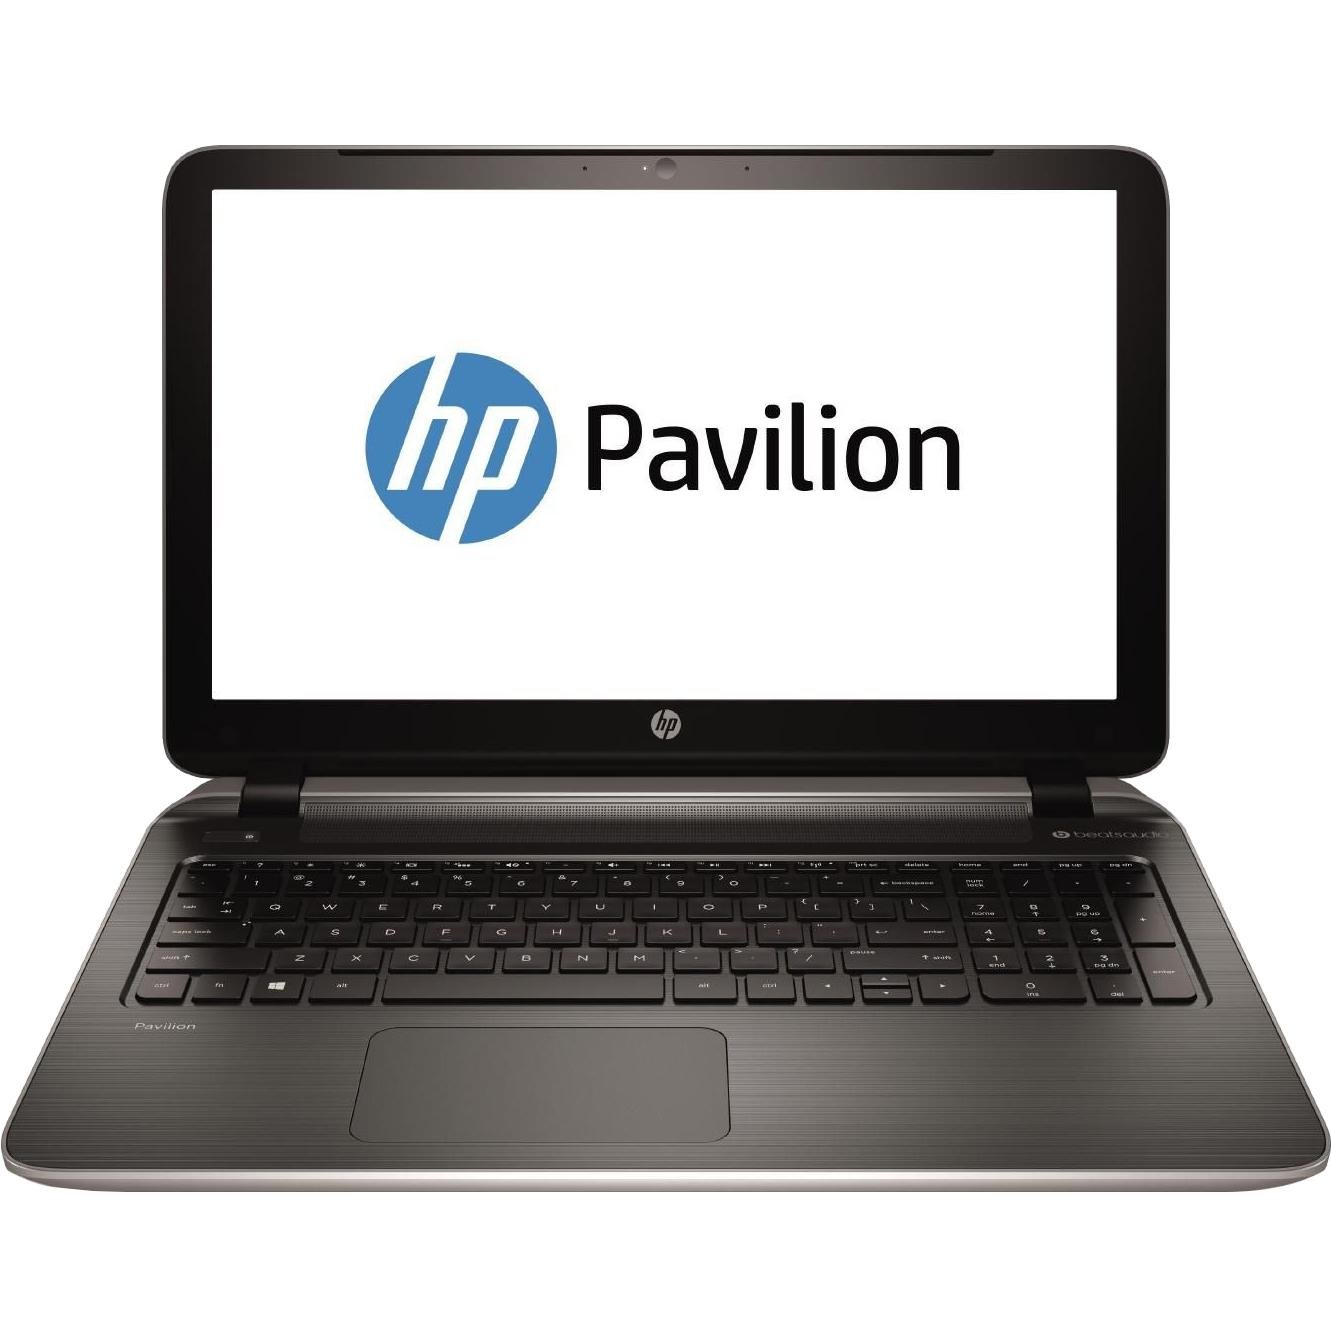 HP Pavilion 15-p105nx Laptop